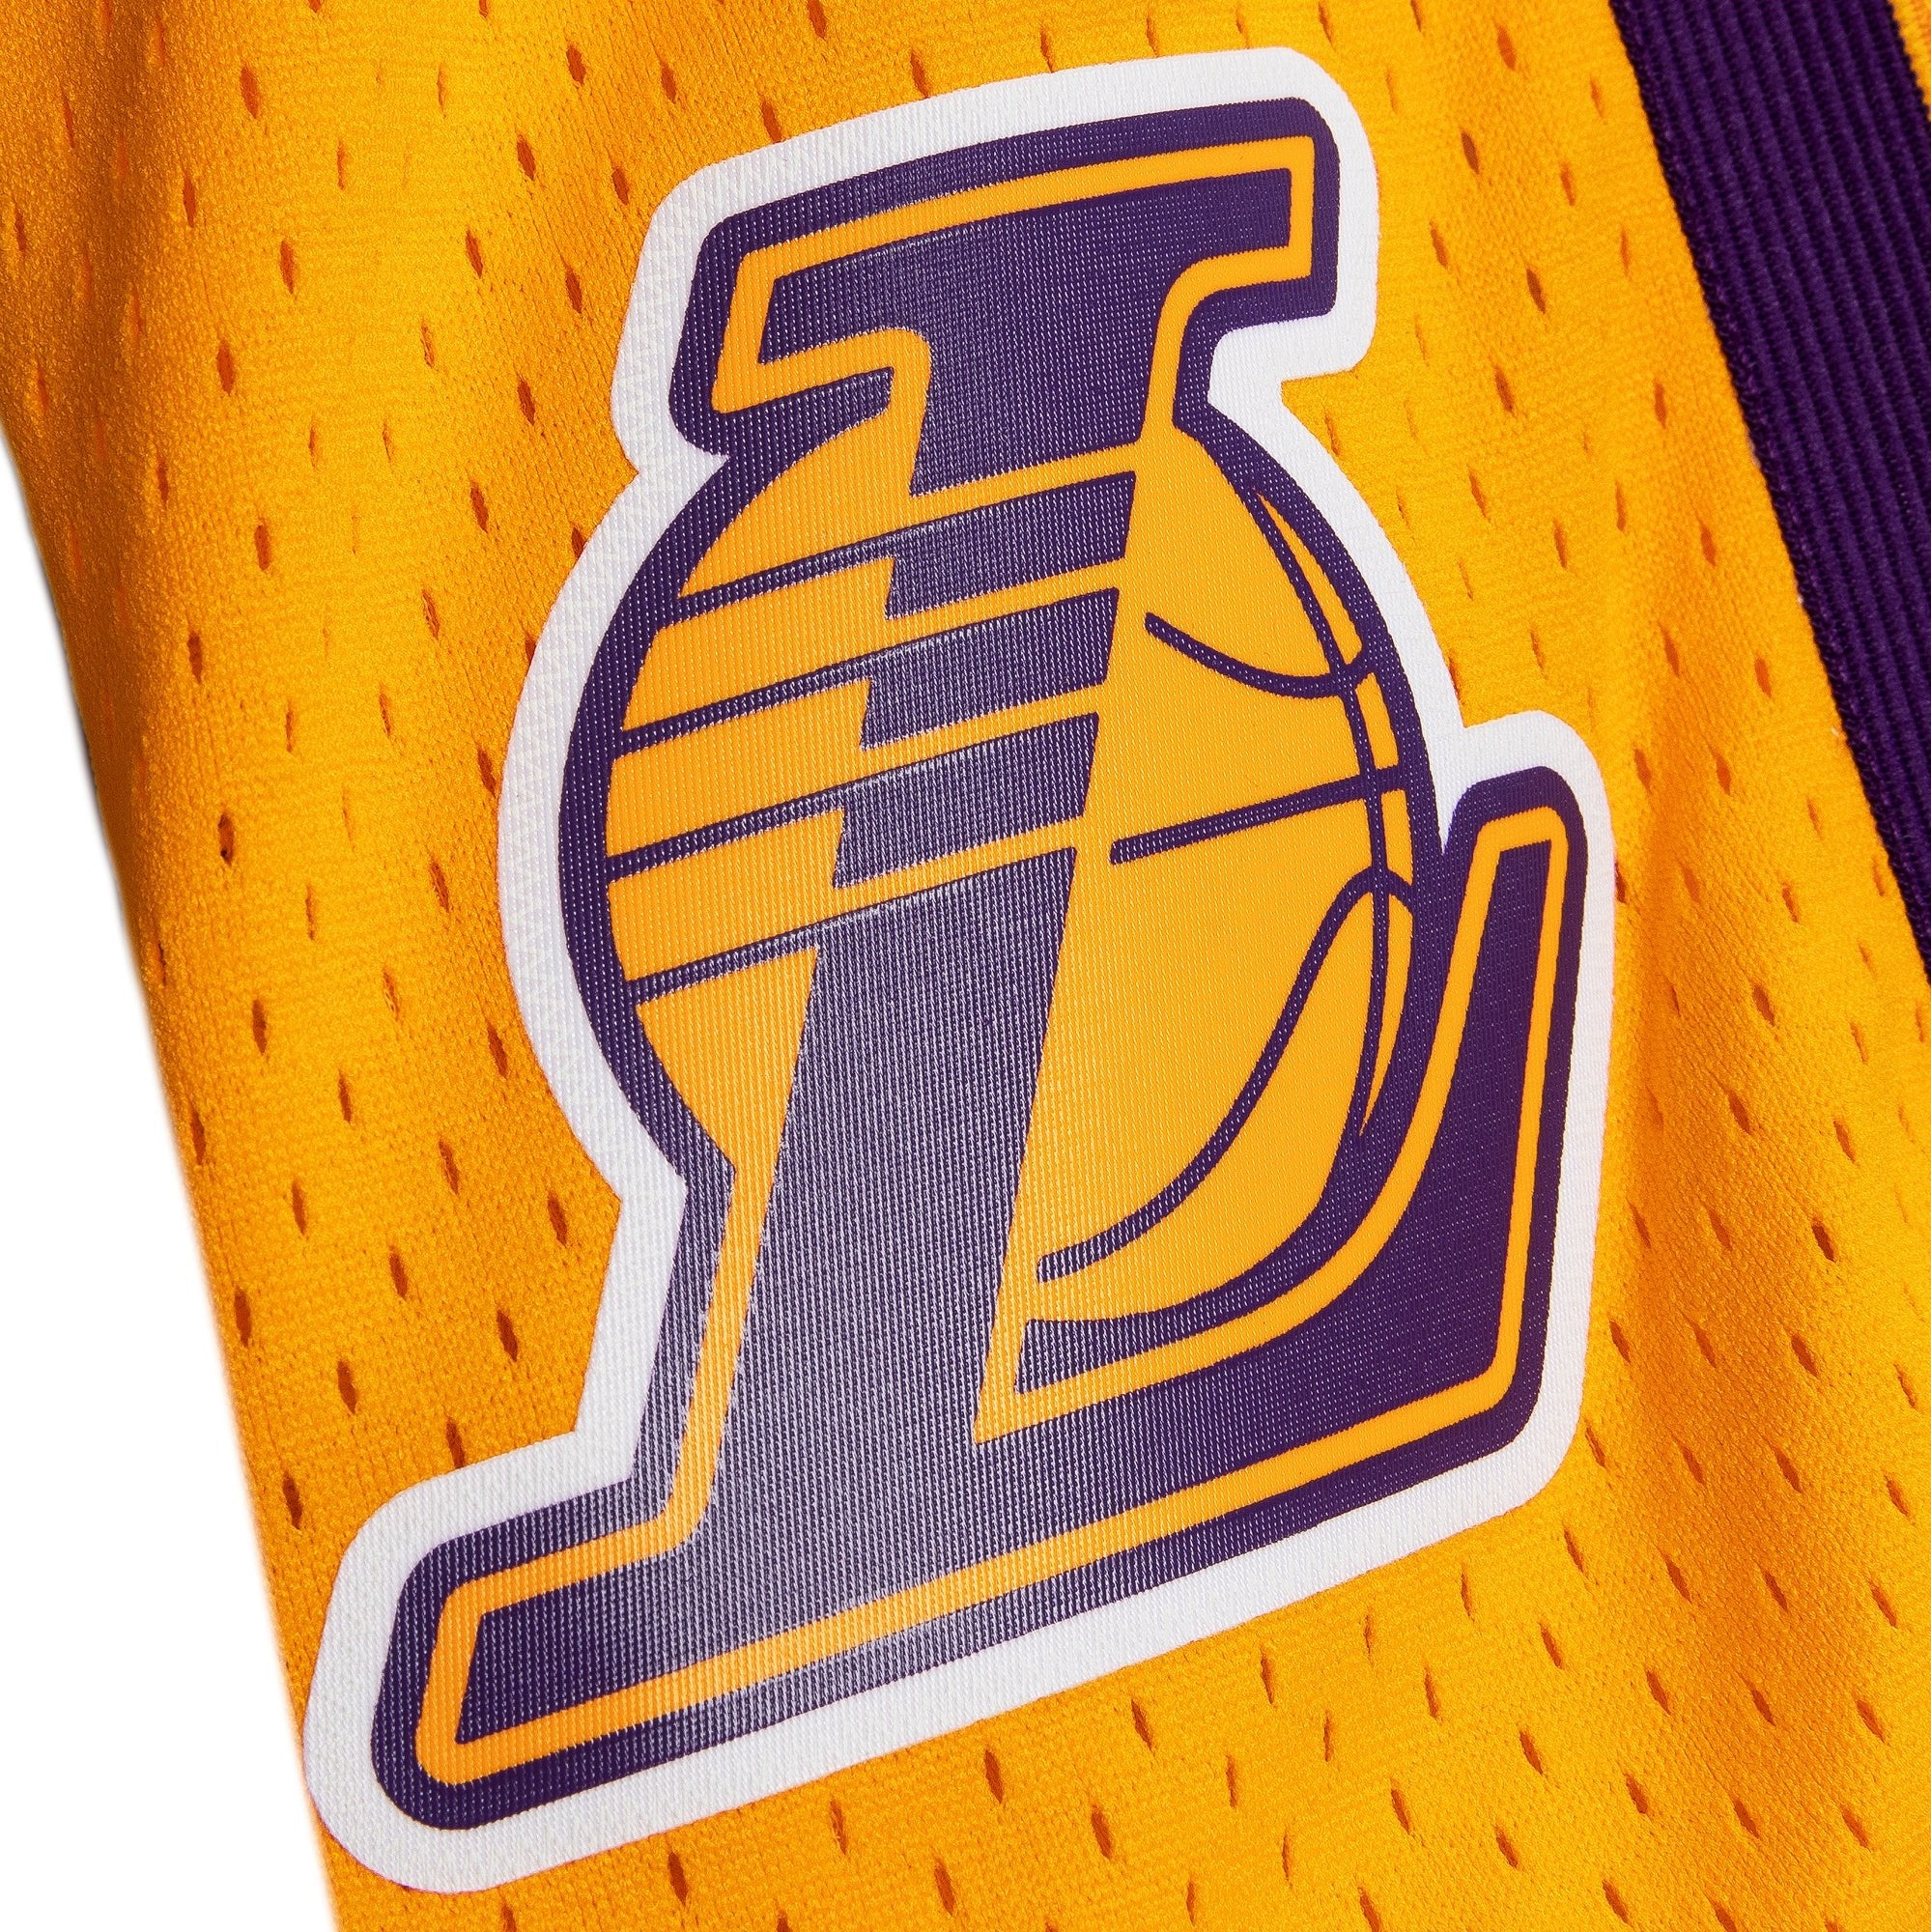 Los Angeles Lakers 2009-2010 Swingman Shorts - SLAM Goods